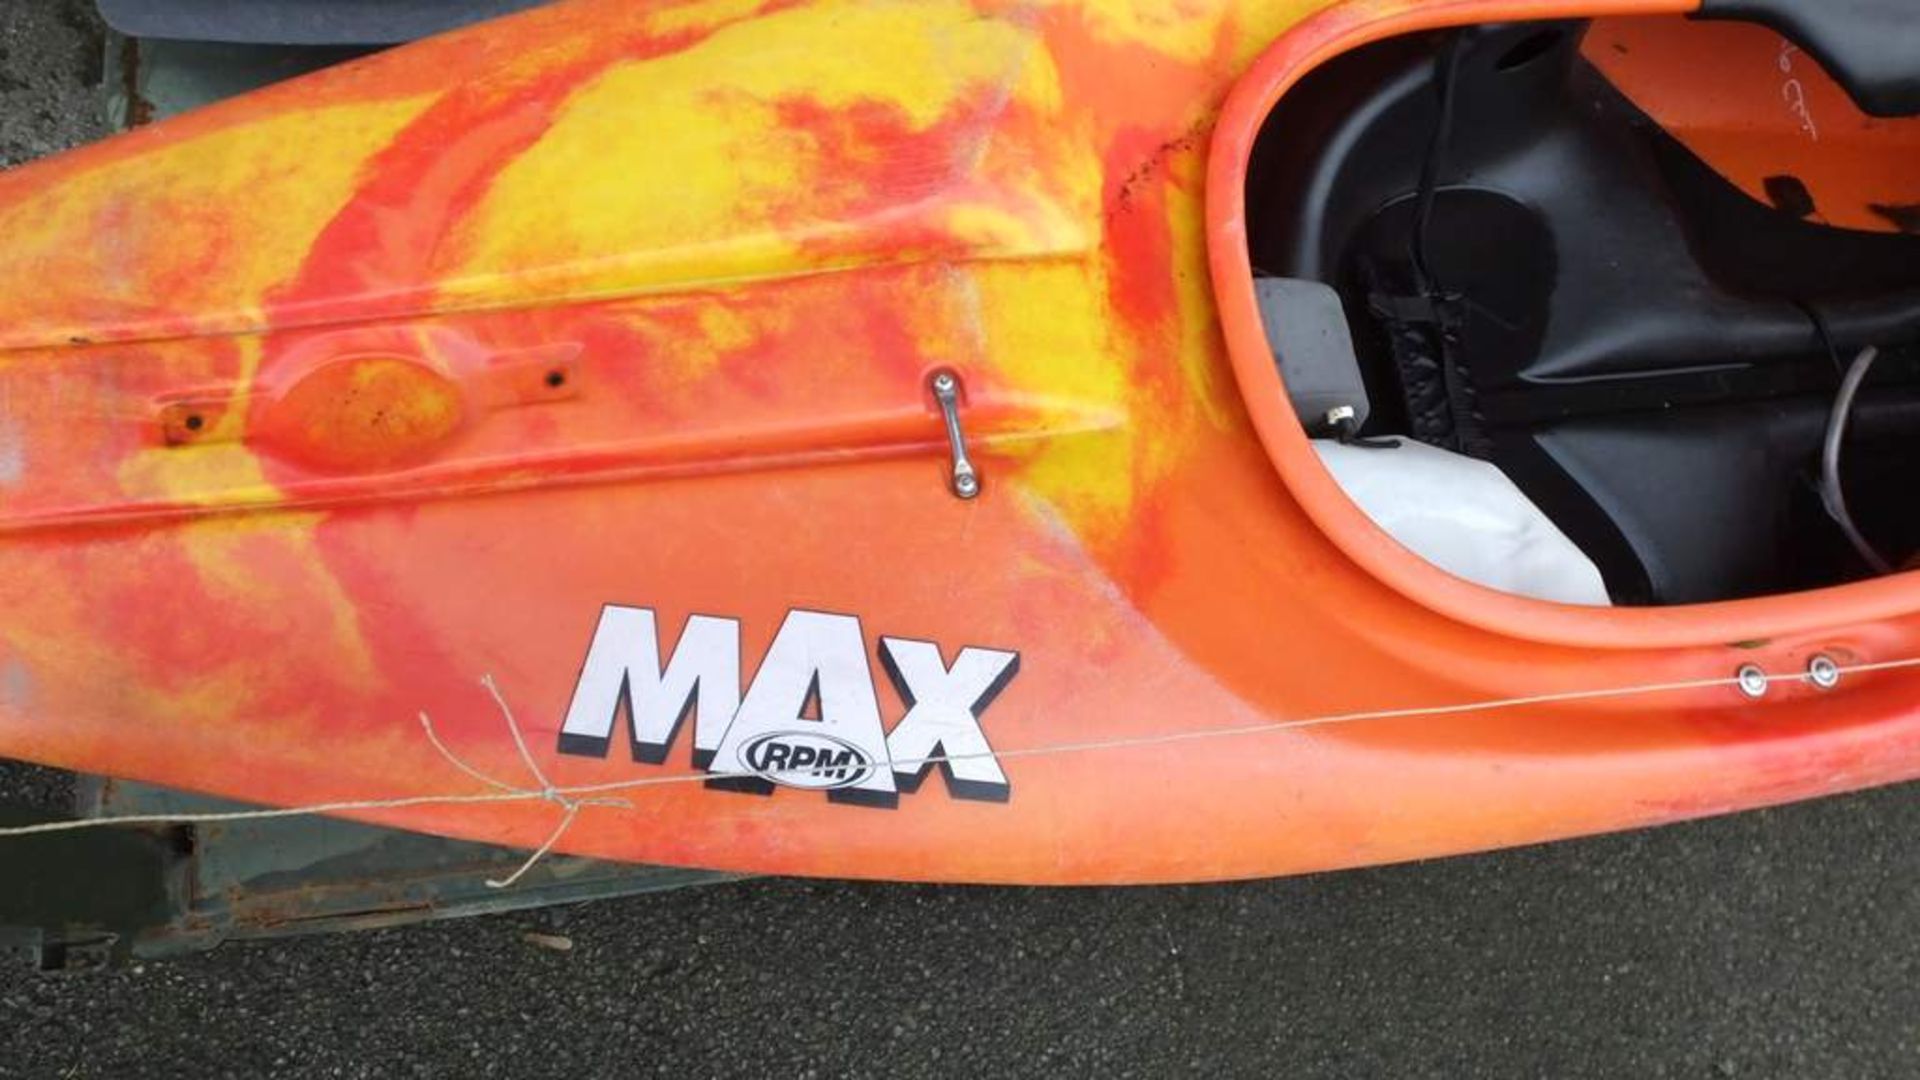 Dagger Max RPM kayak - Image 2 of 4